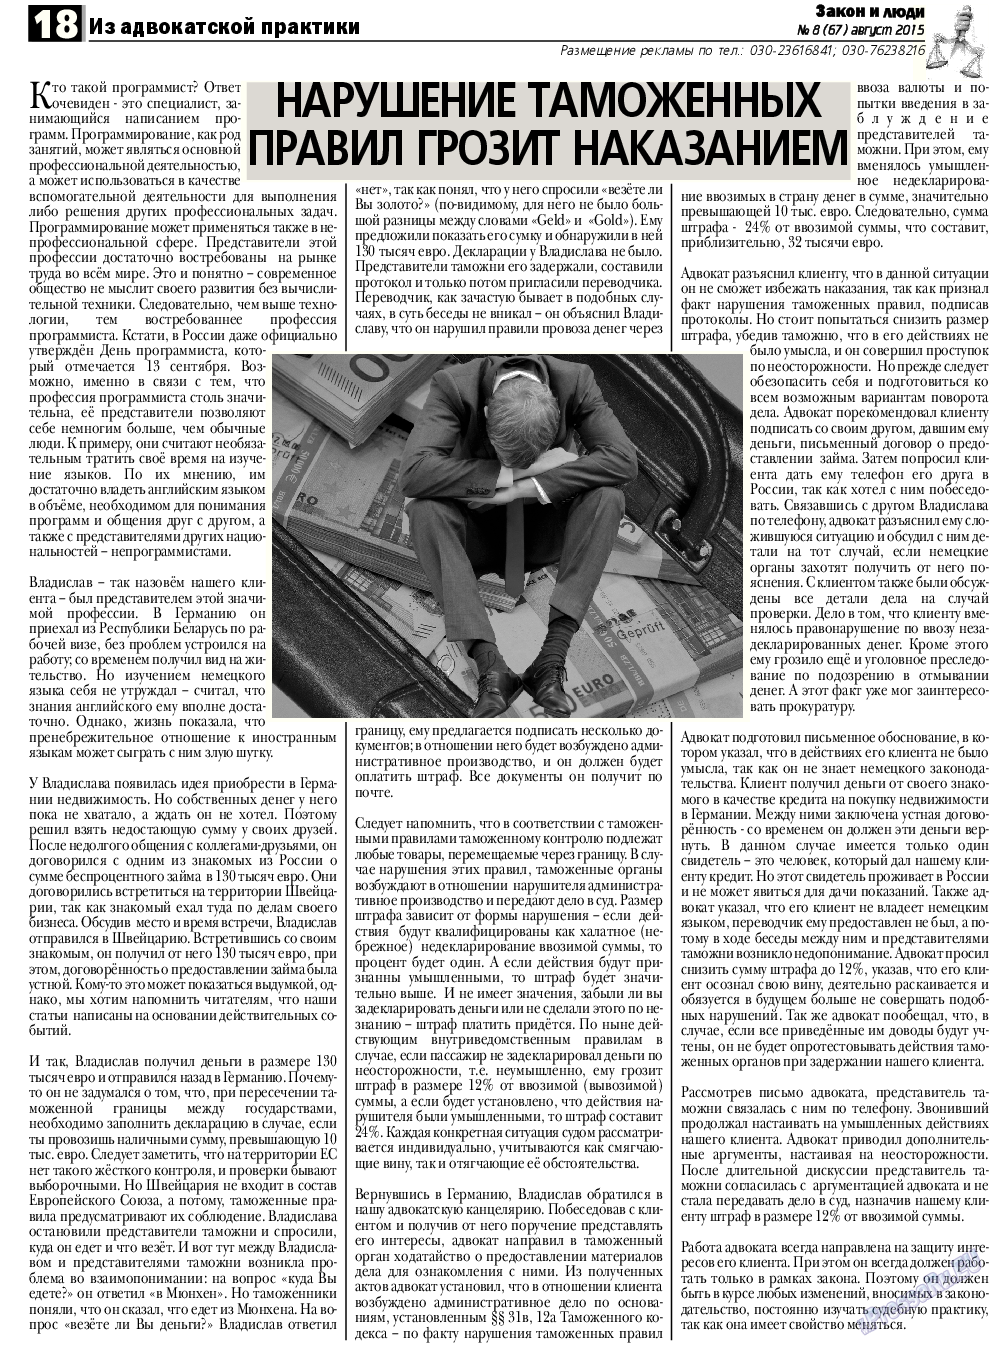 Закон и люди, газета. 2015 №8 стр.18